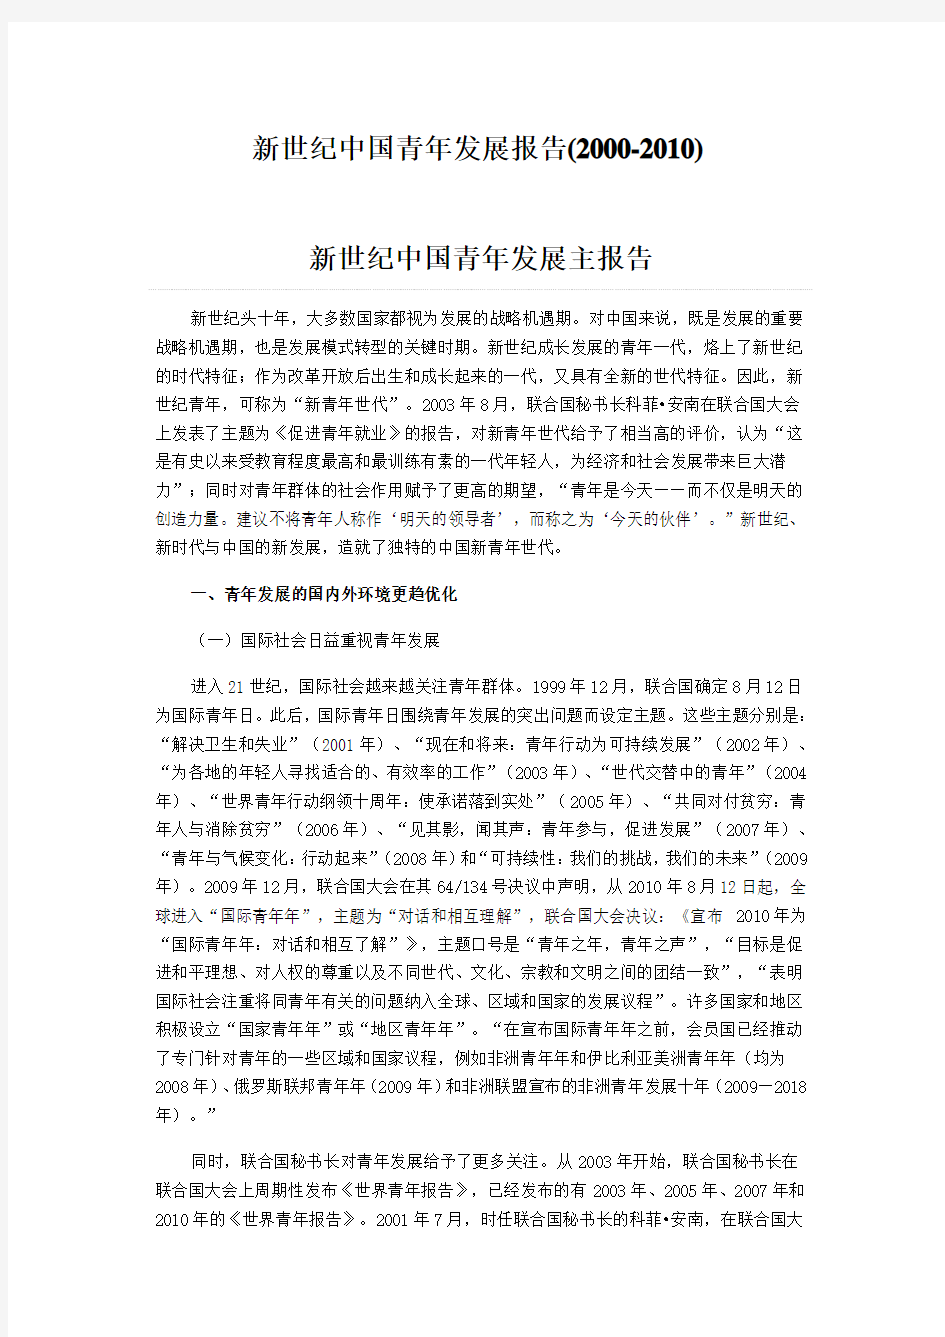 新世纪中国青年发展报告(2000-2010)